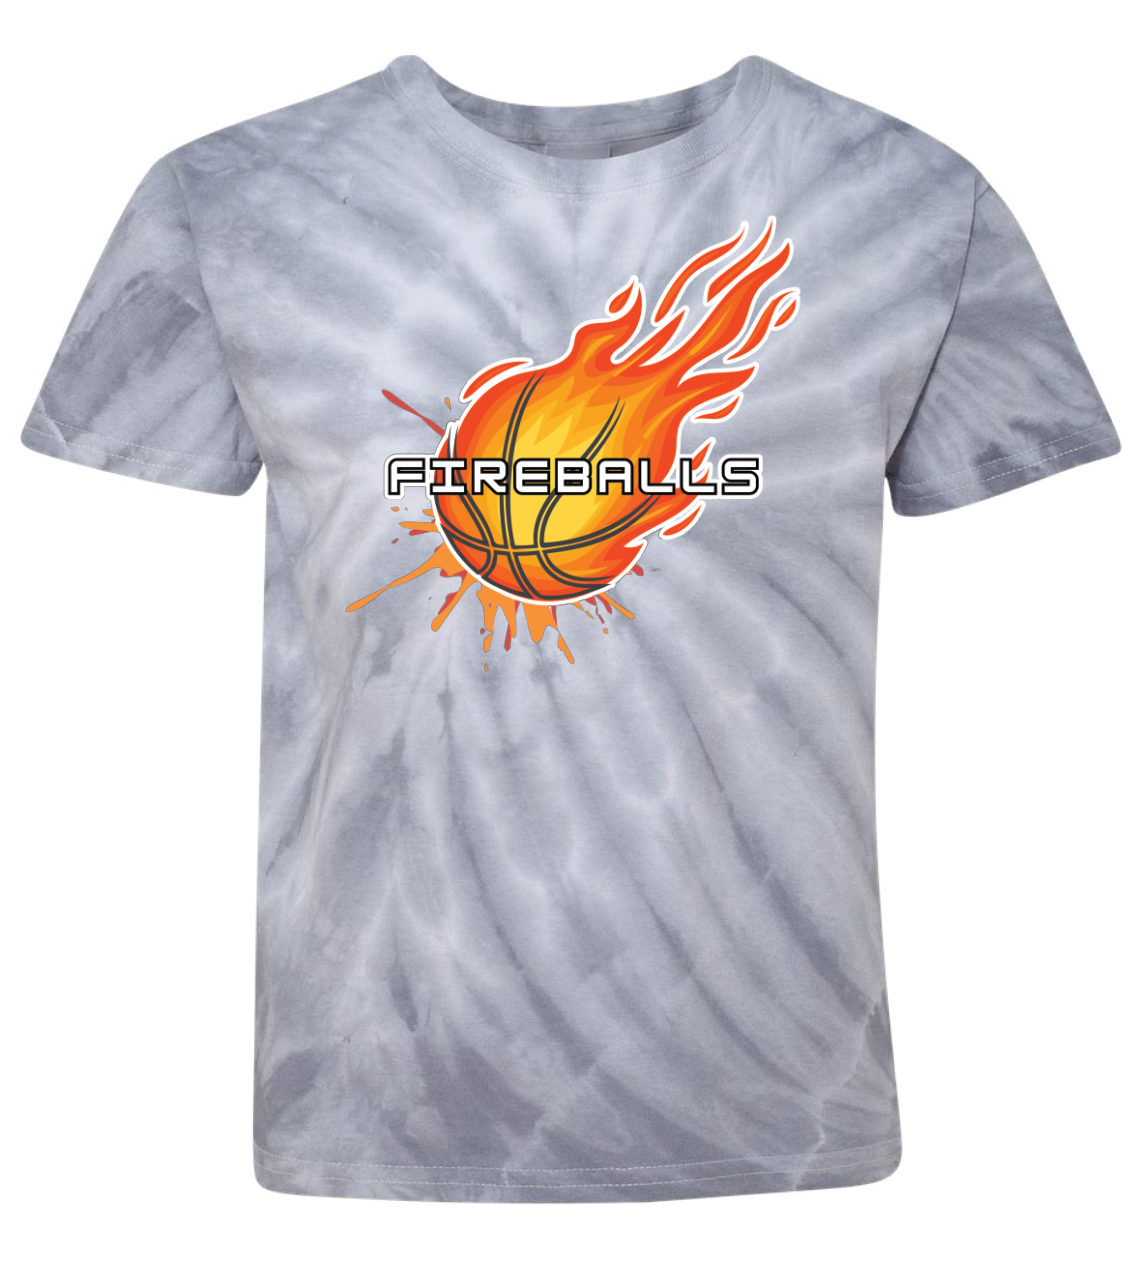 Fireballs Pinwheel Tie-Dyed T-shirt